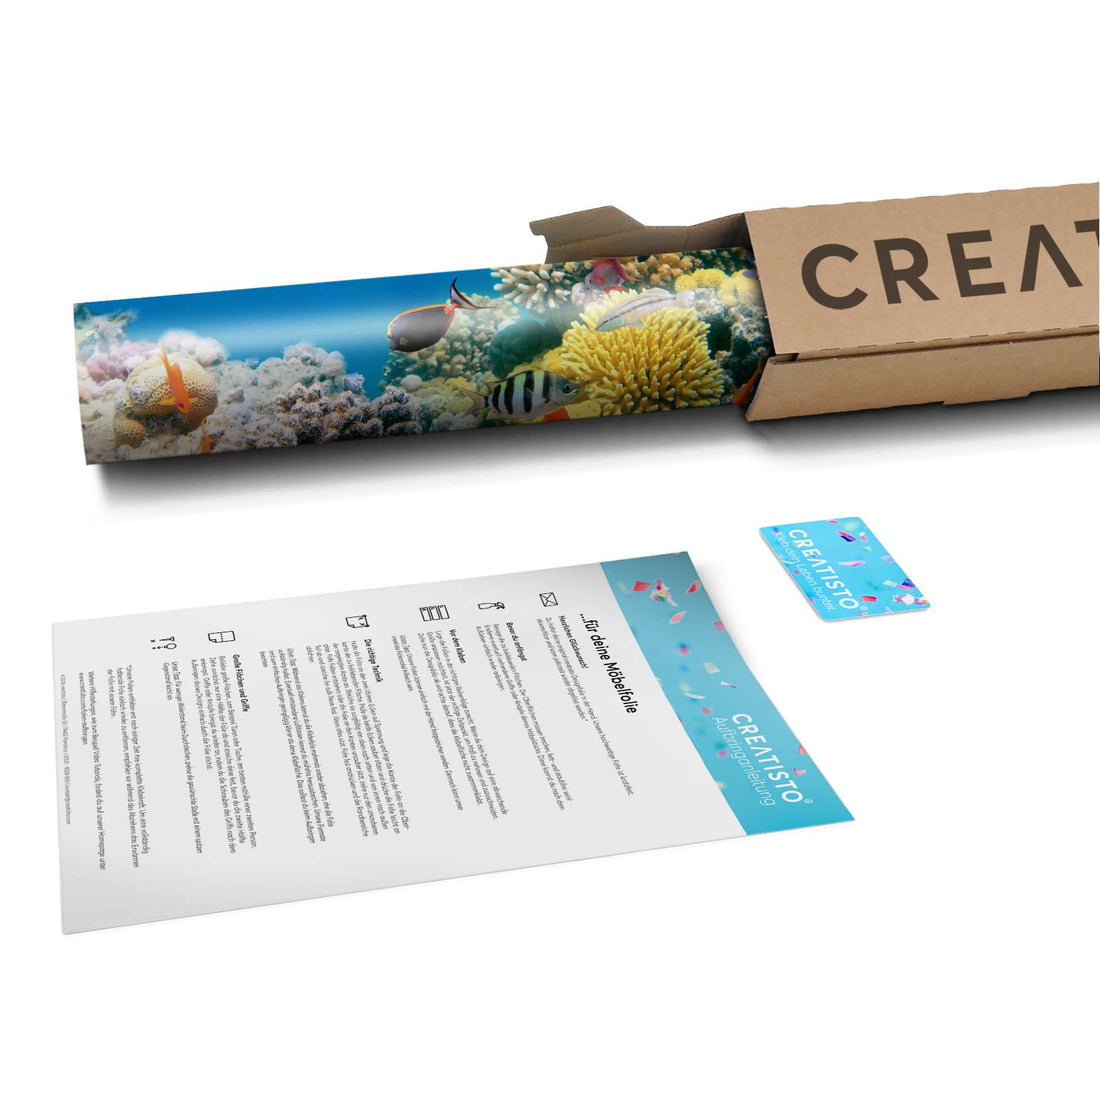 Klebefolie Coral Reef - Paket - creatisto pds2